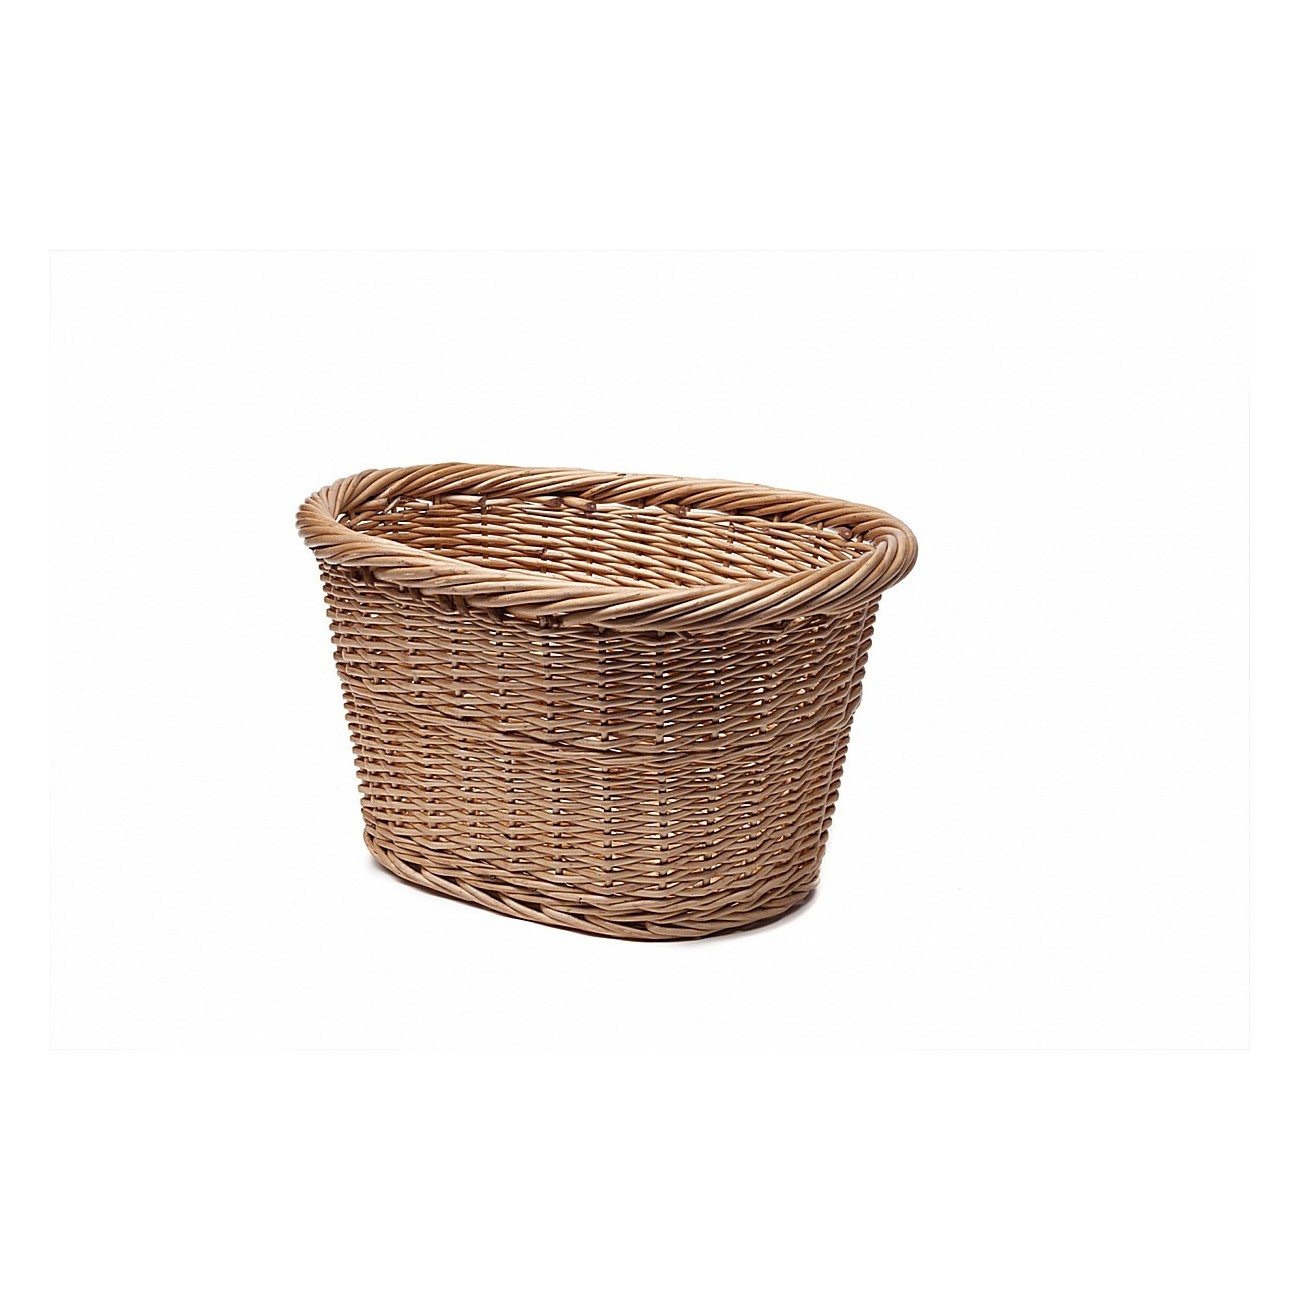 Extra size oval wicker basket 41 x 32 x 24cm - 1